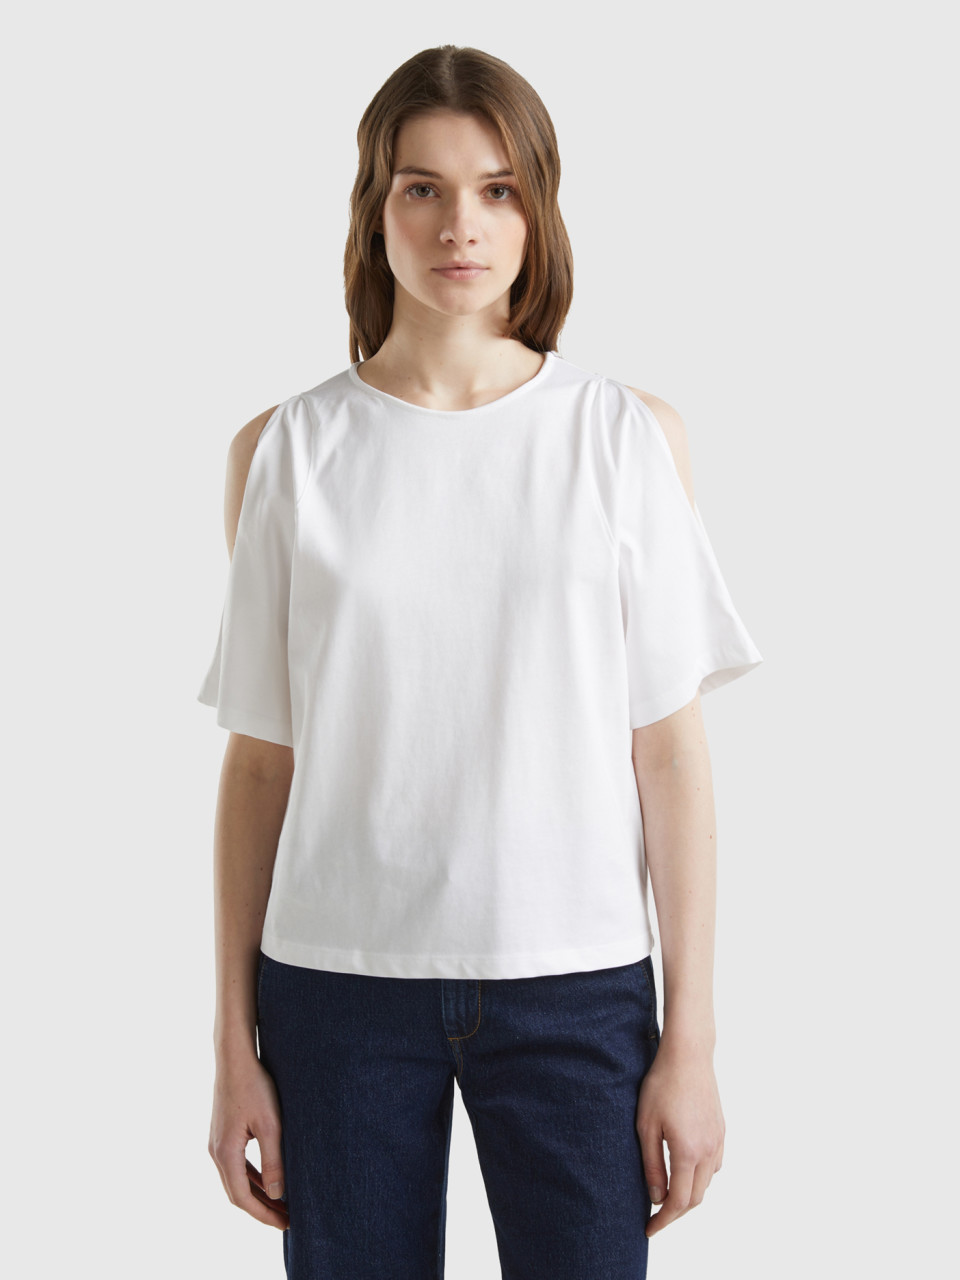 Benetton, Cut Out Sleeve T-shirt, White, Women